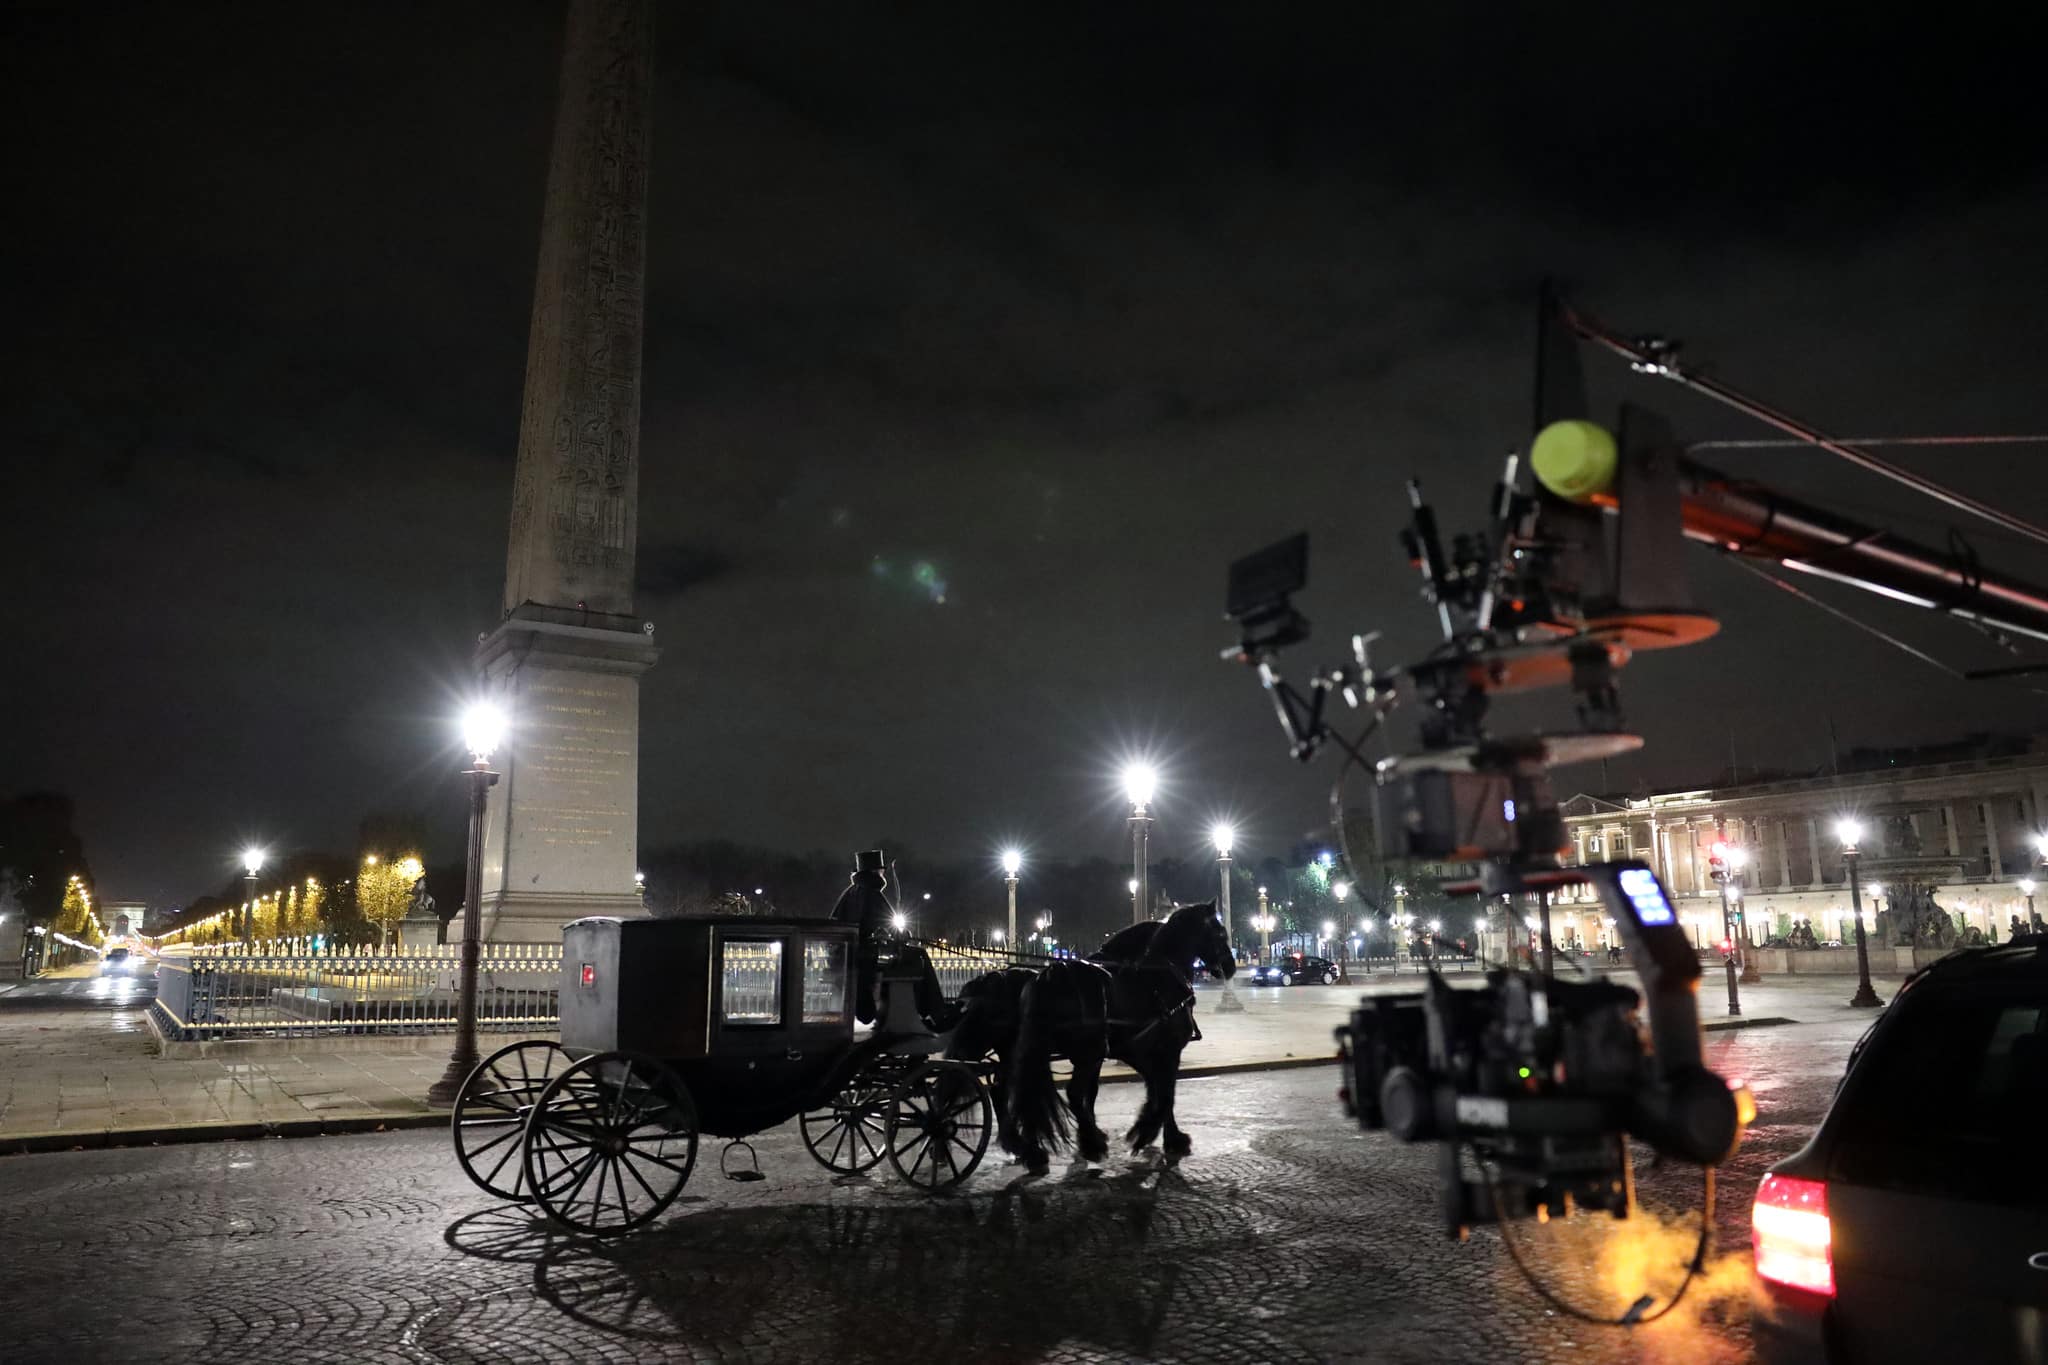 filming paris cult places horse carriage actors